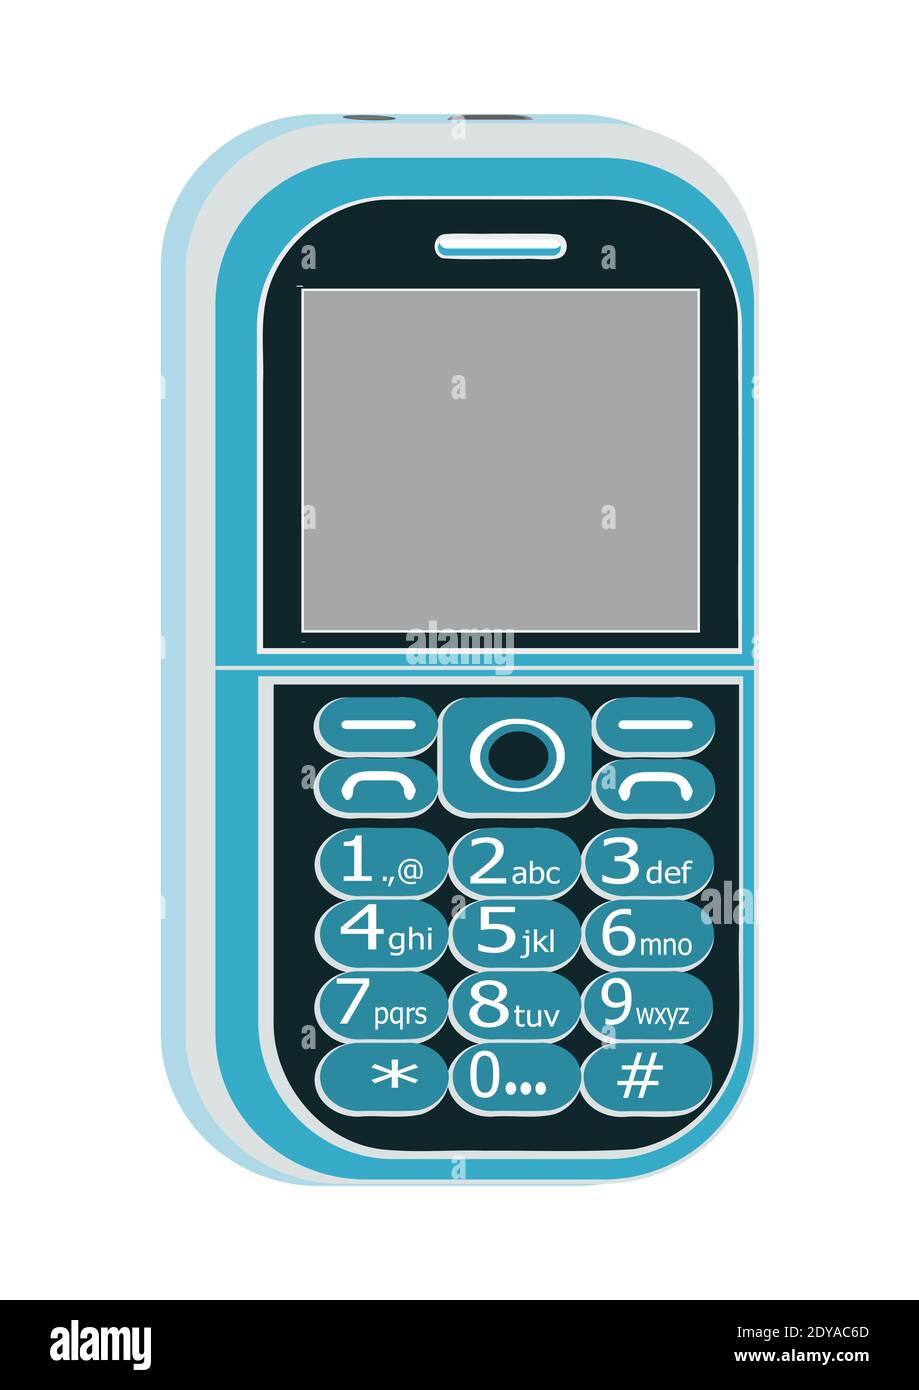 Image de couleur bleue, clavier téléphone mobile, dessin graphique  vectoriel ayant en arrière-plan blanc Image Vectorielle Stock - Alamy